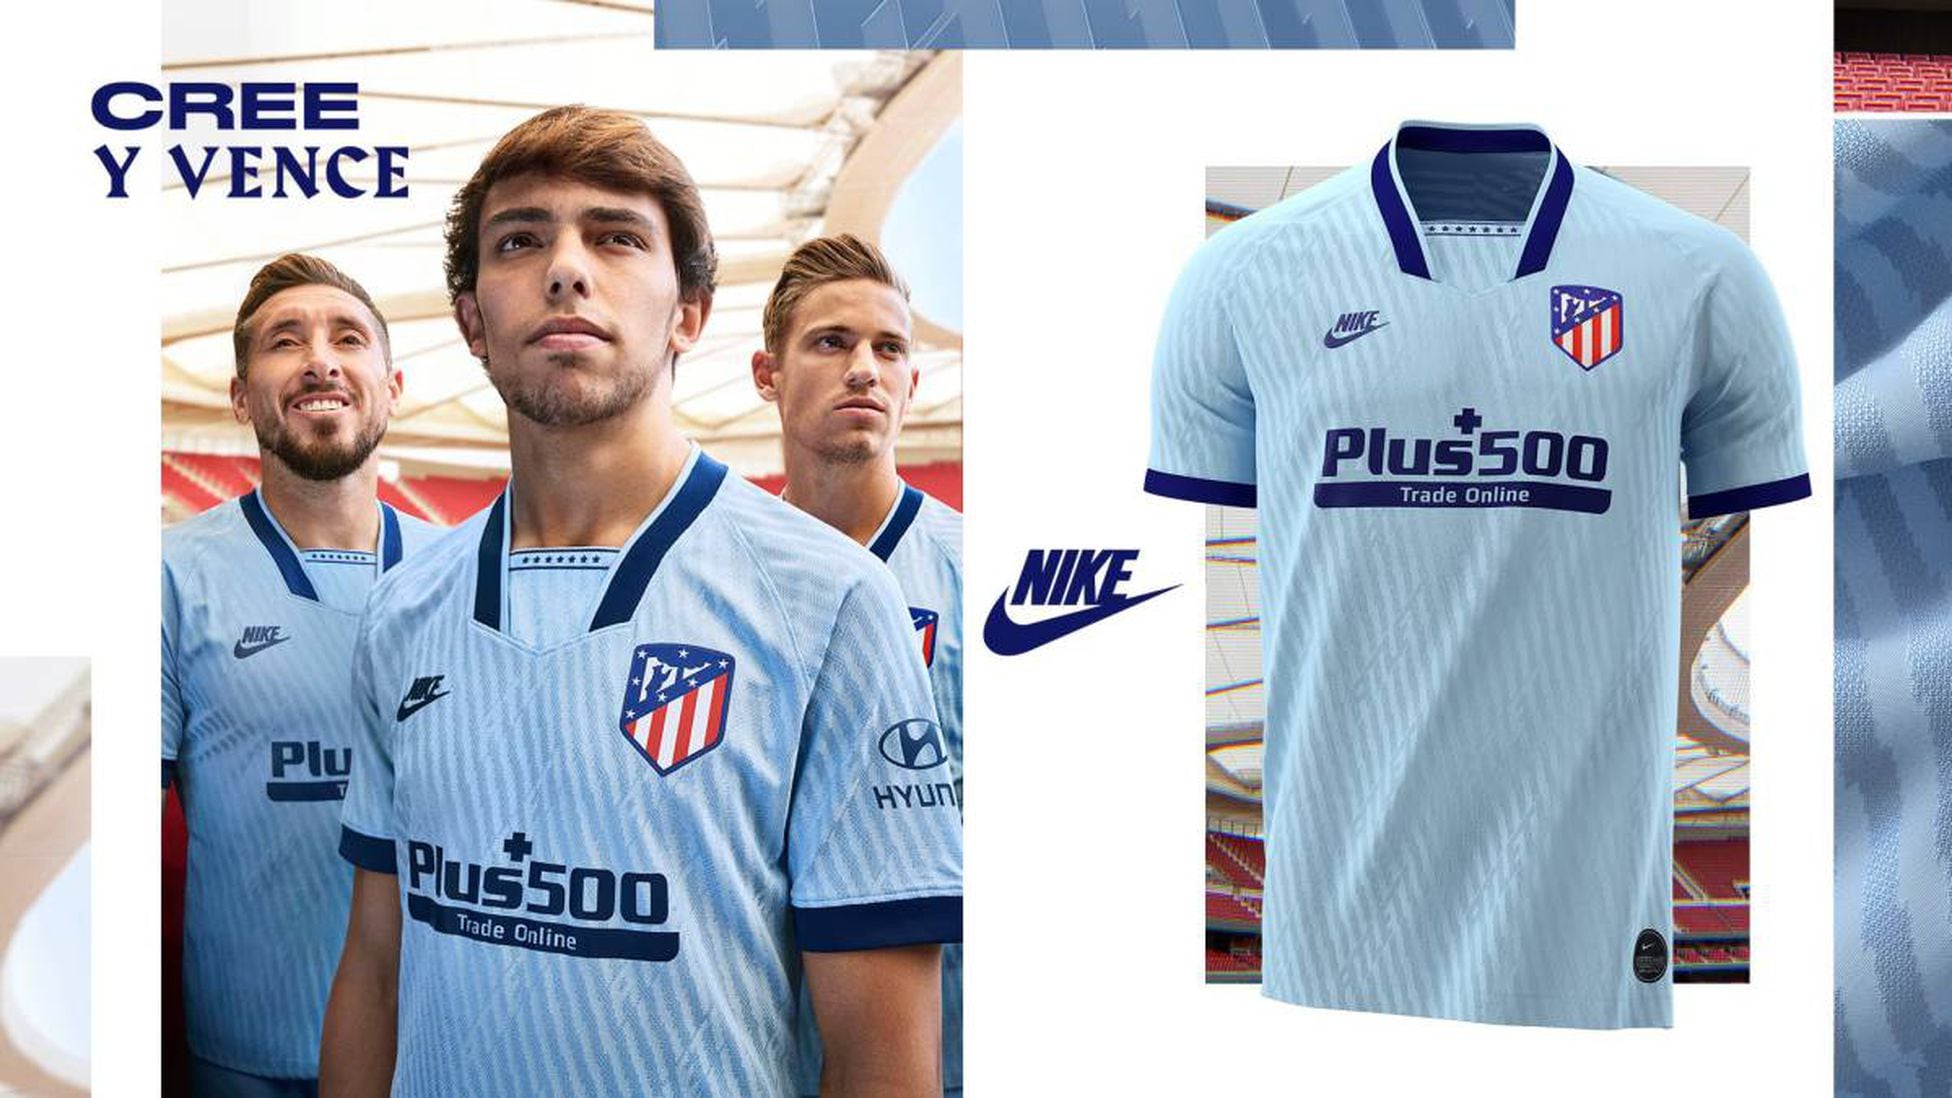 El azul celeste, color del tercer uniforme del Atlético AS.com